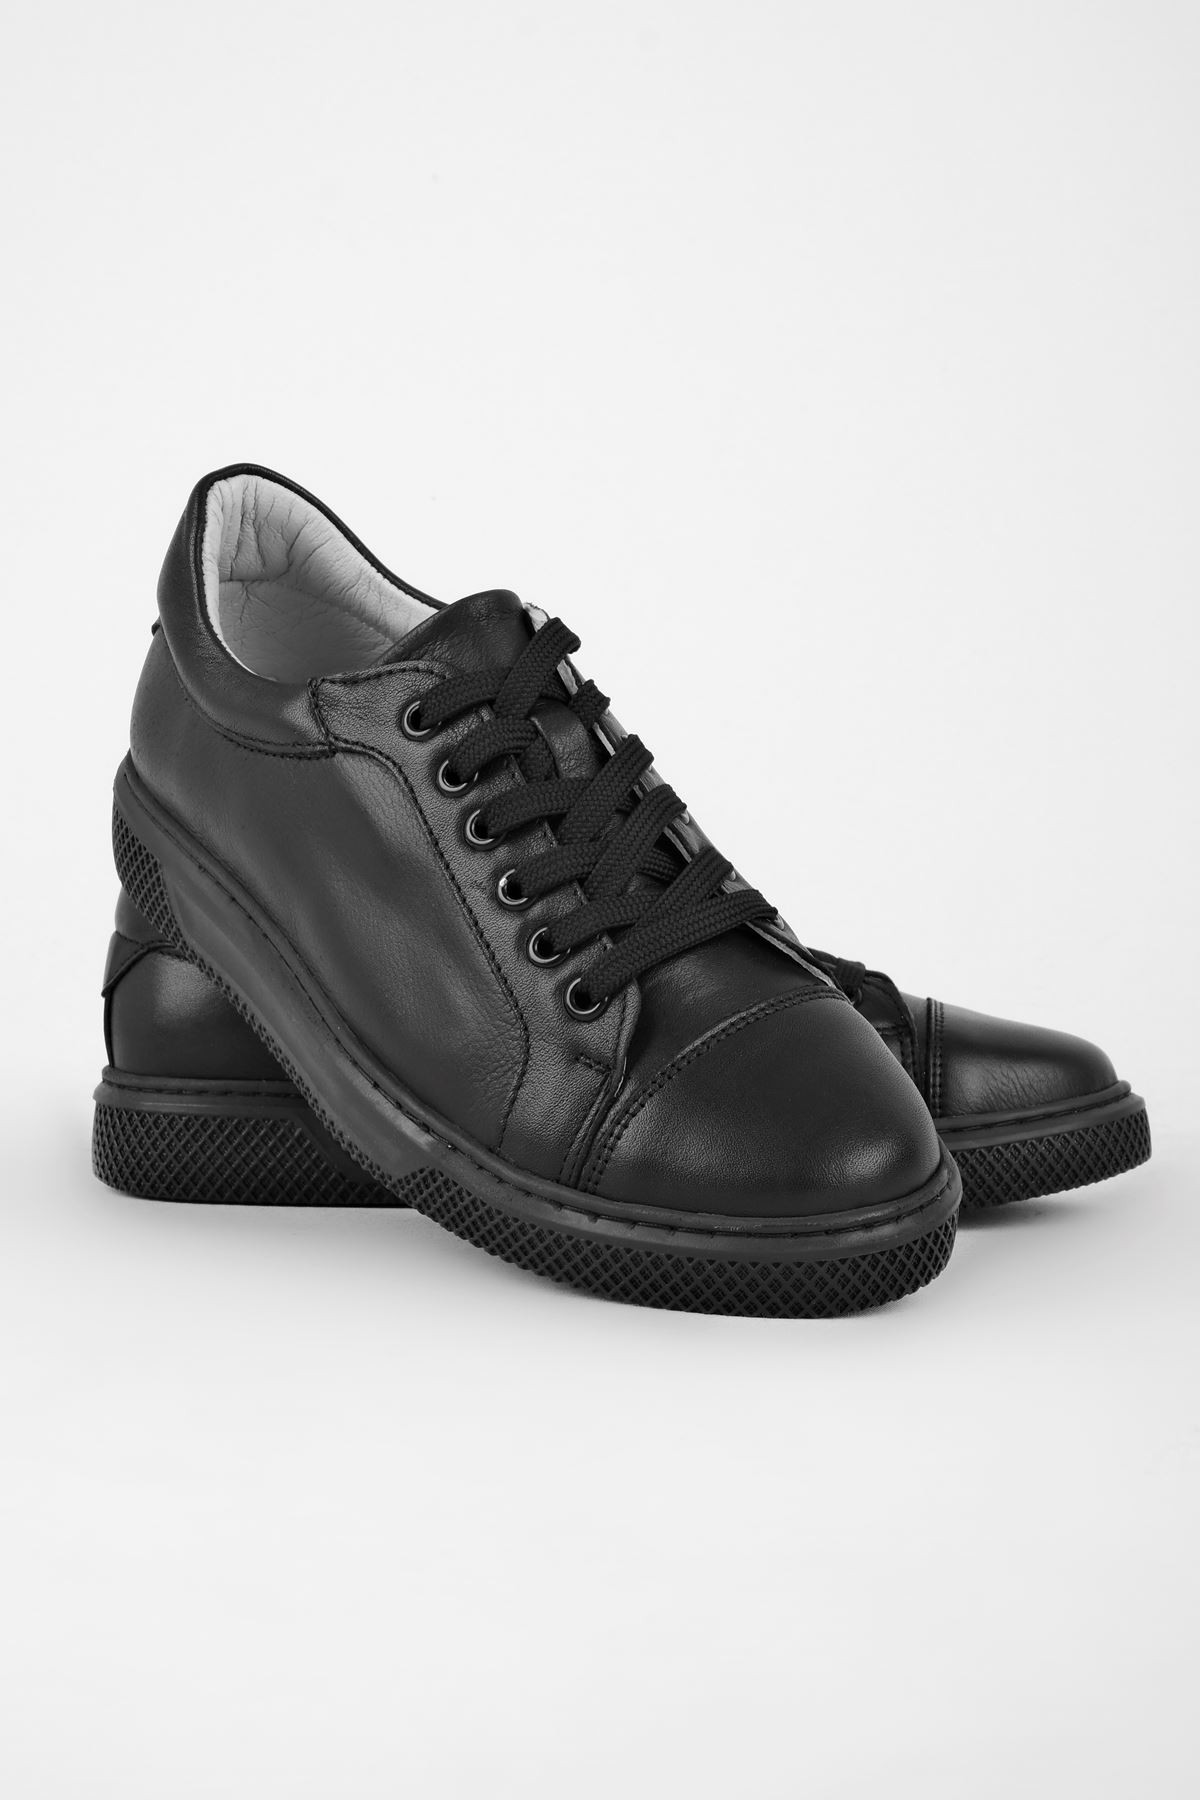 Barry Bağcıklı Kadın Hakiki Deri Spor Ayakkabı-B2790-1 - Siyah